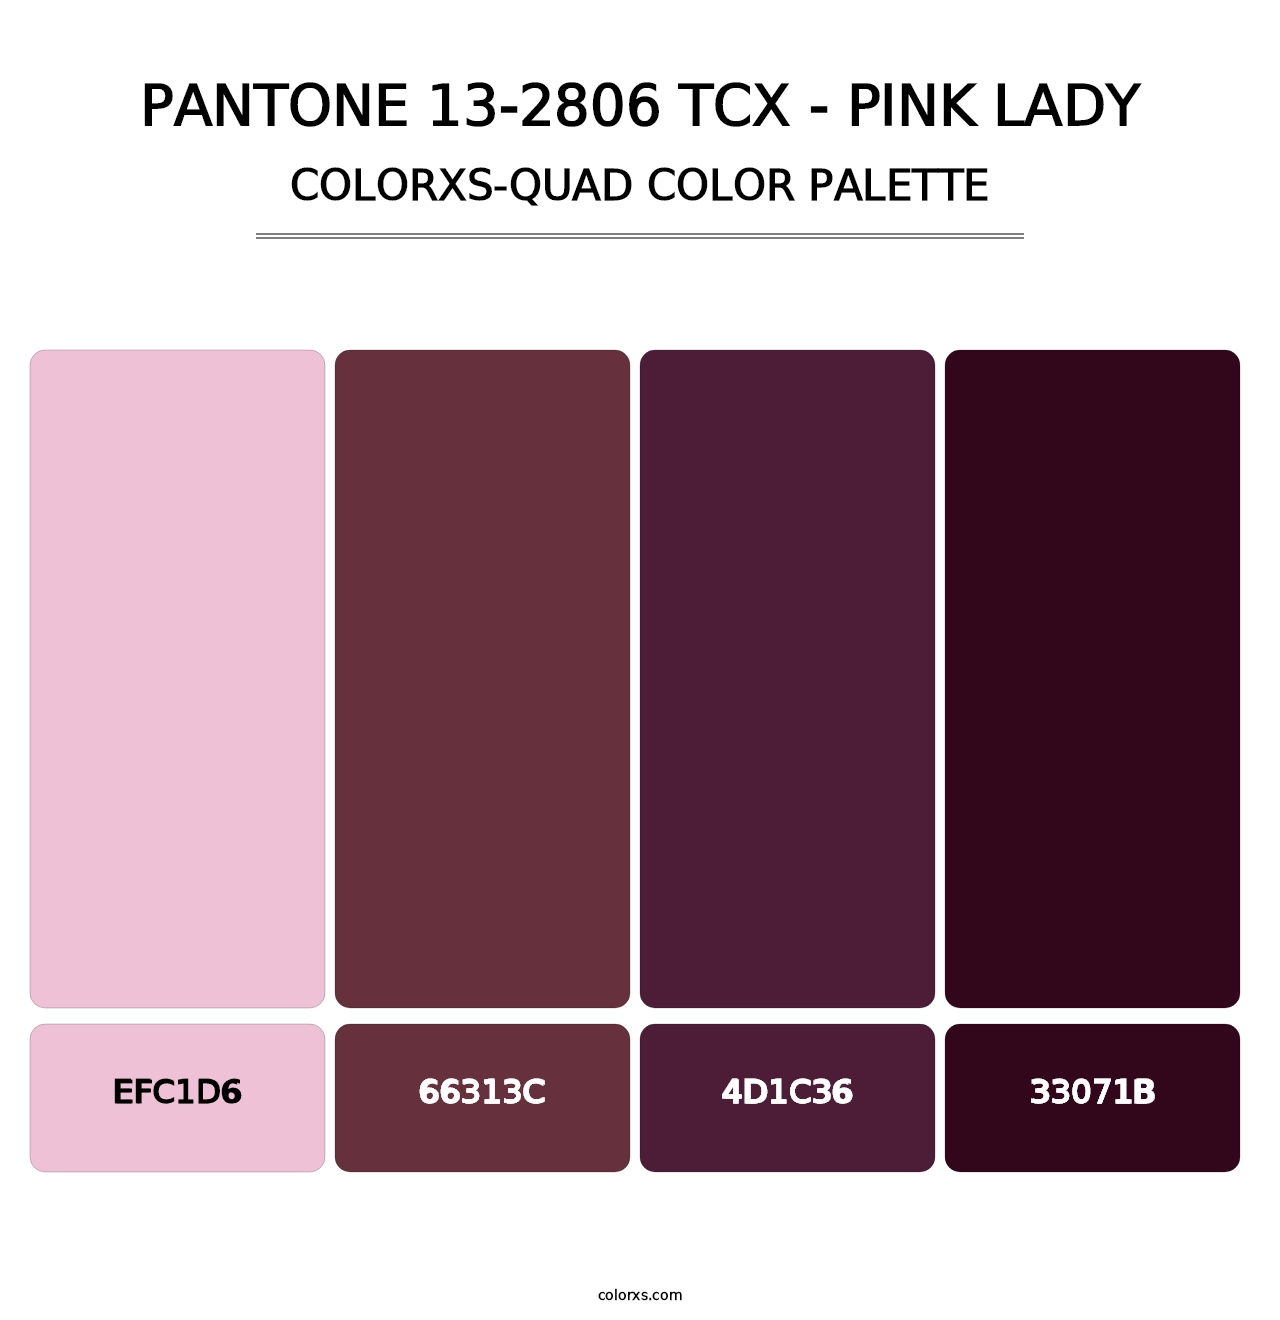 PANTONE 13-2806 TCX - Pink Lady - Colorxs Quad Palette